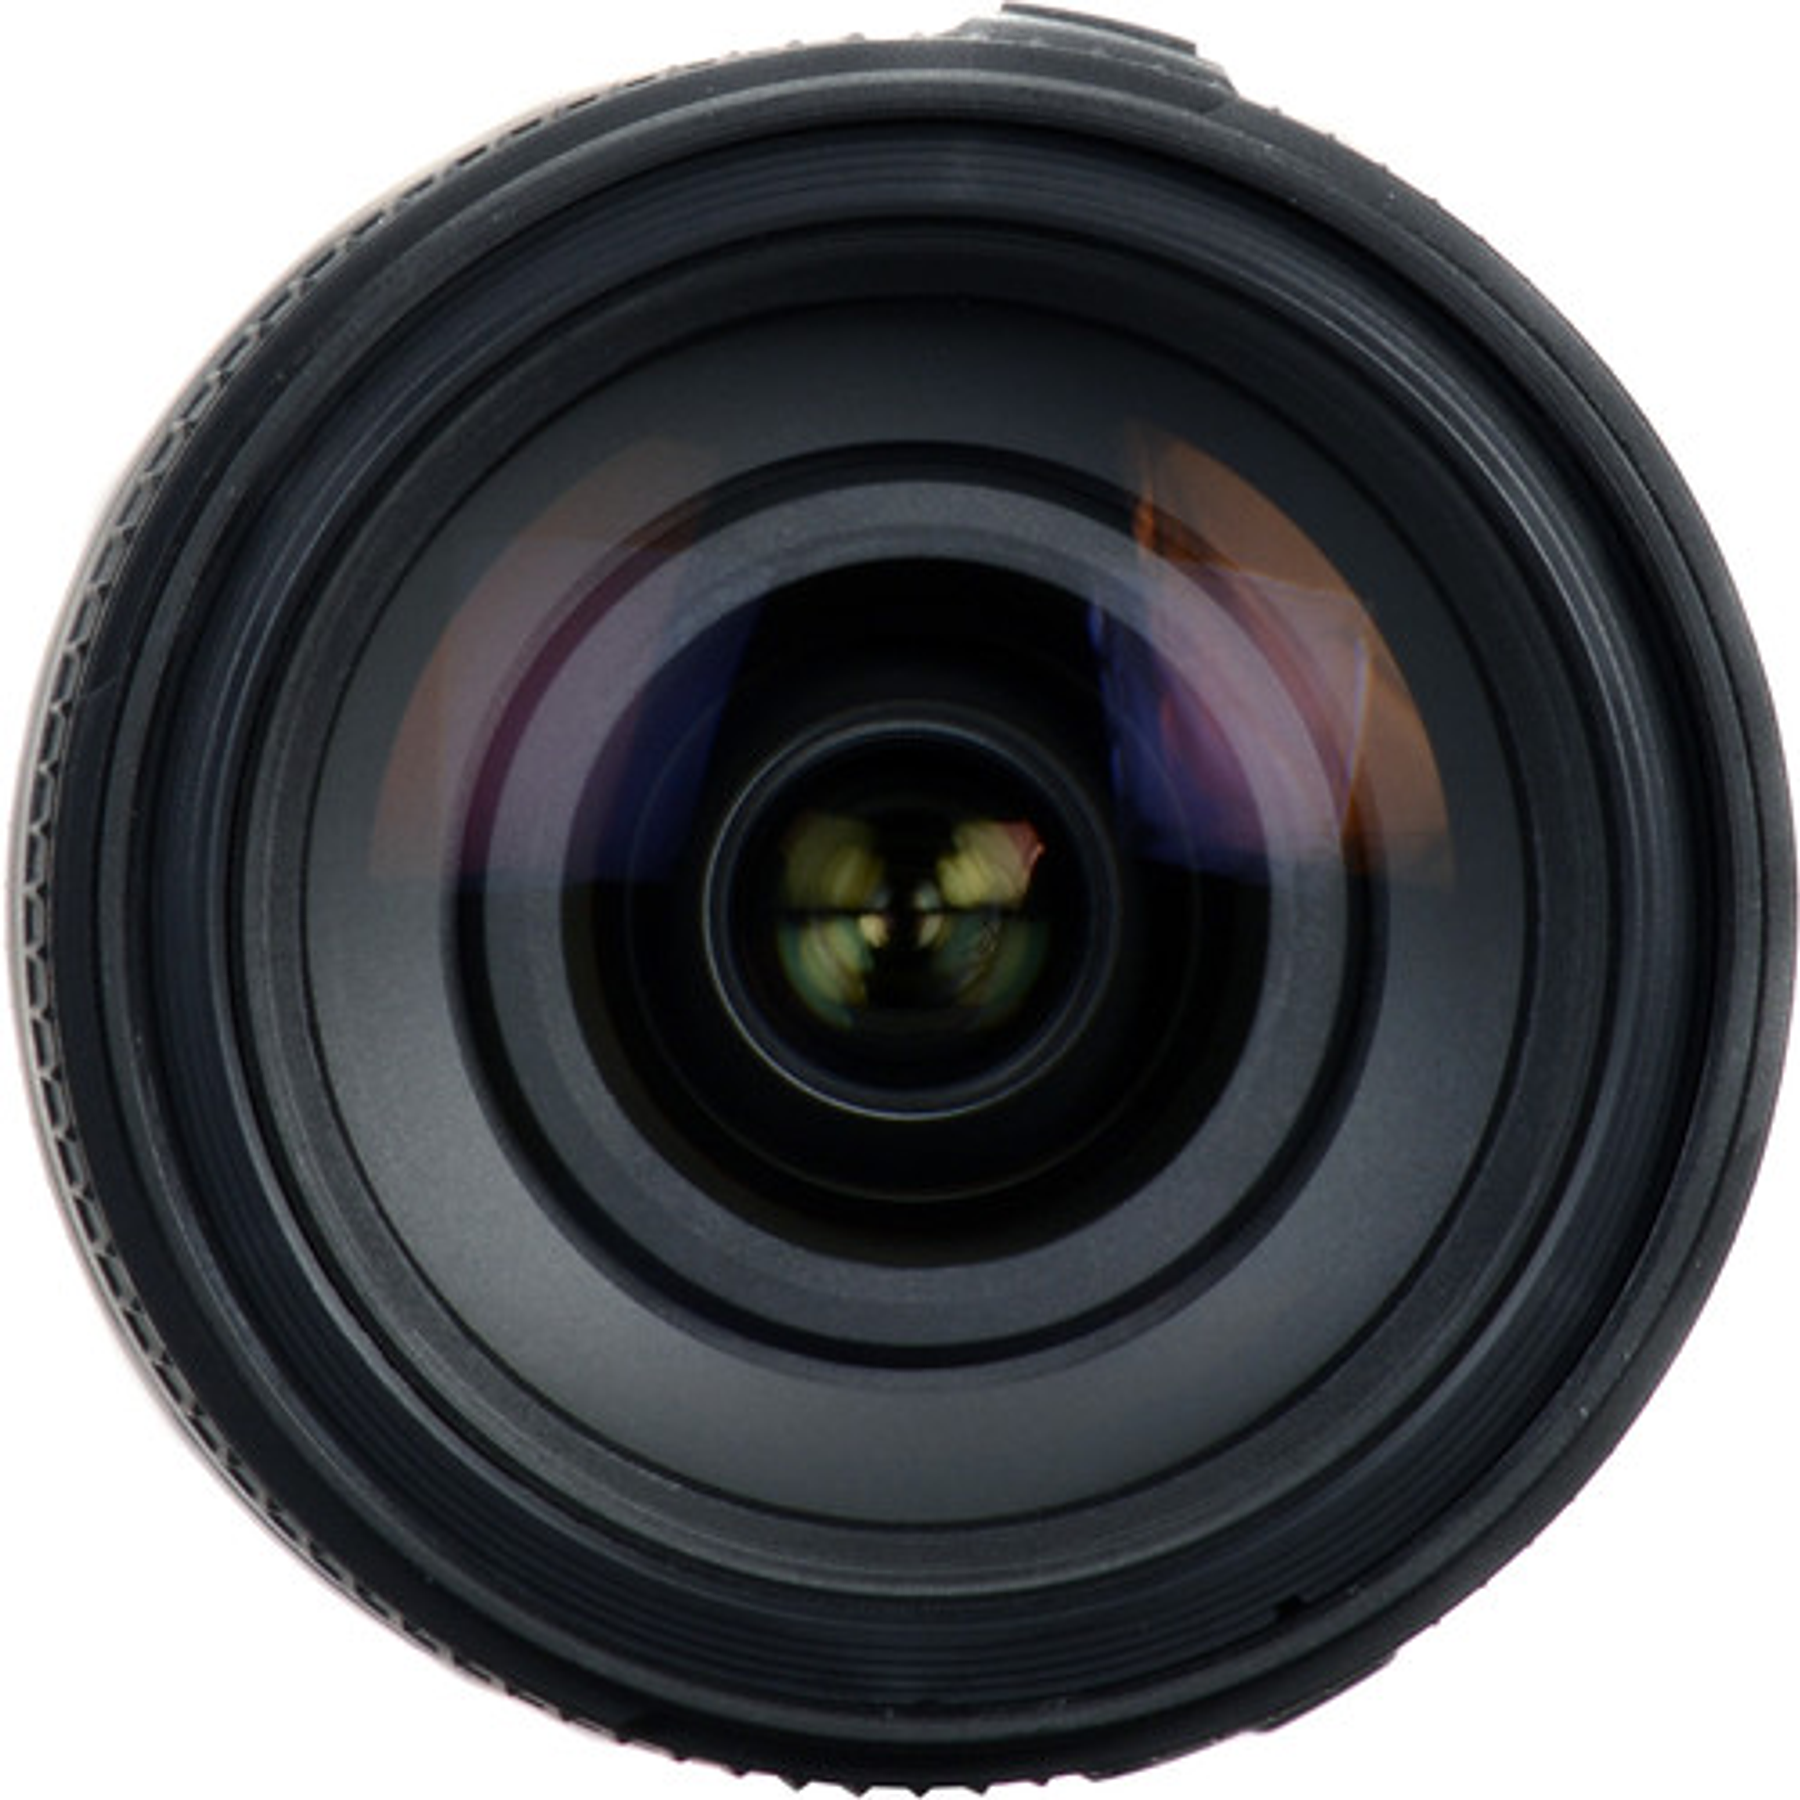 Tamron Lente 28-300MM F/3,5-6,3 Di VC PZD para Canon/Nikon